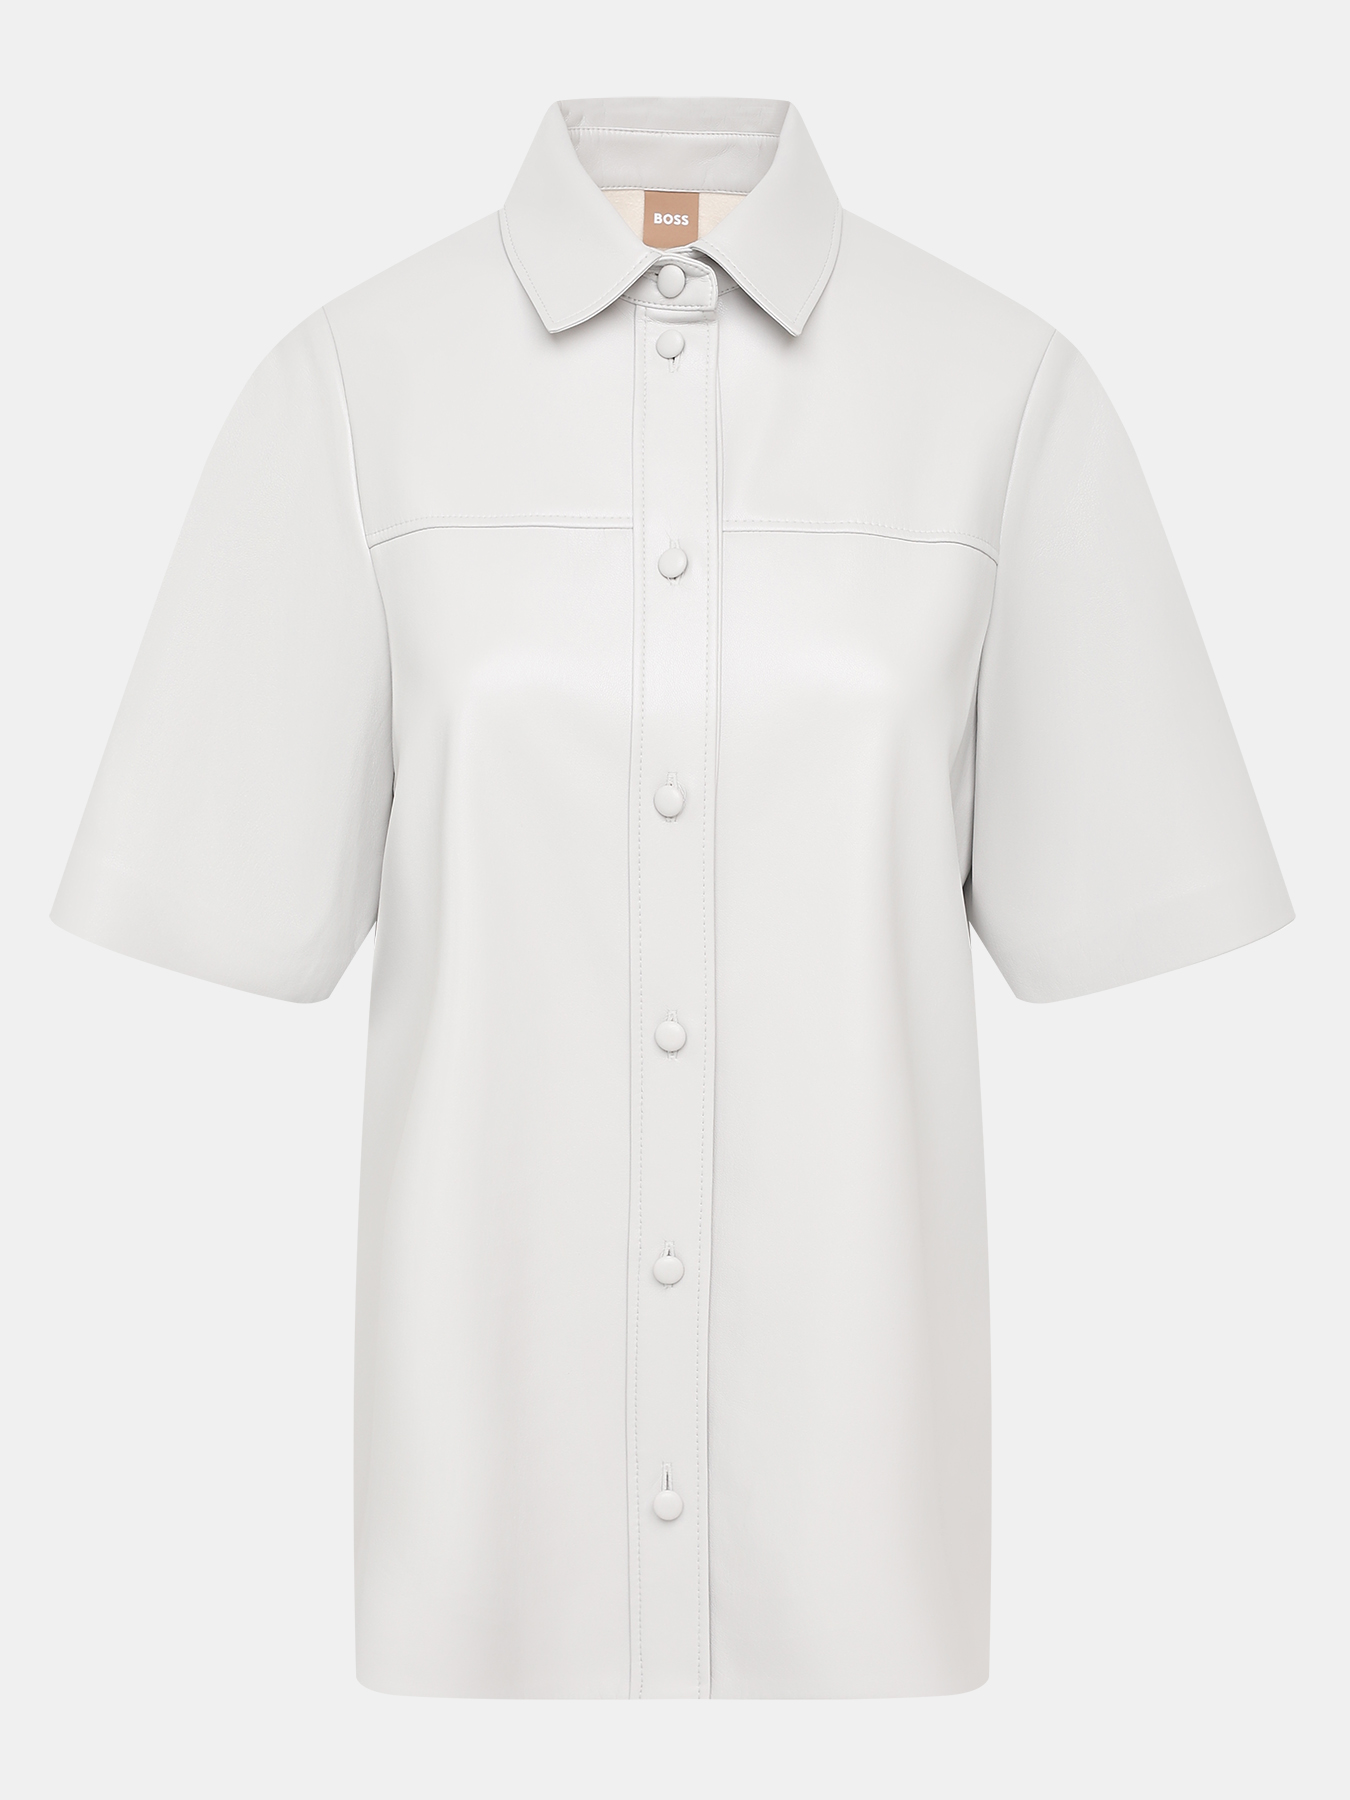 Рубашка Bolisa BOSS 421148-016, цвет серый, размер 40